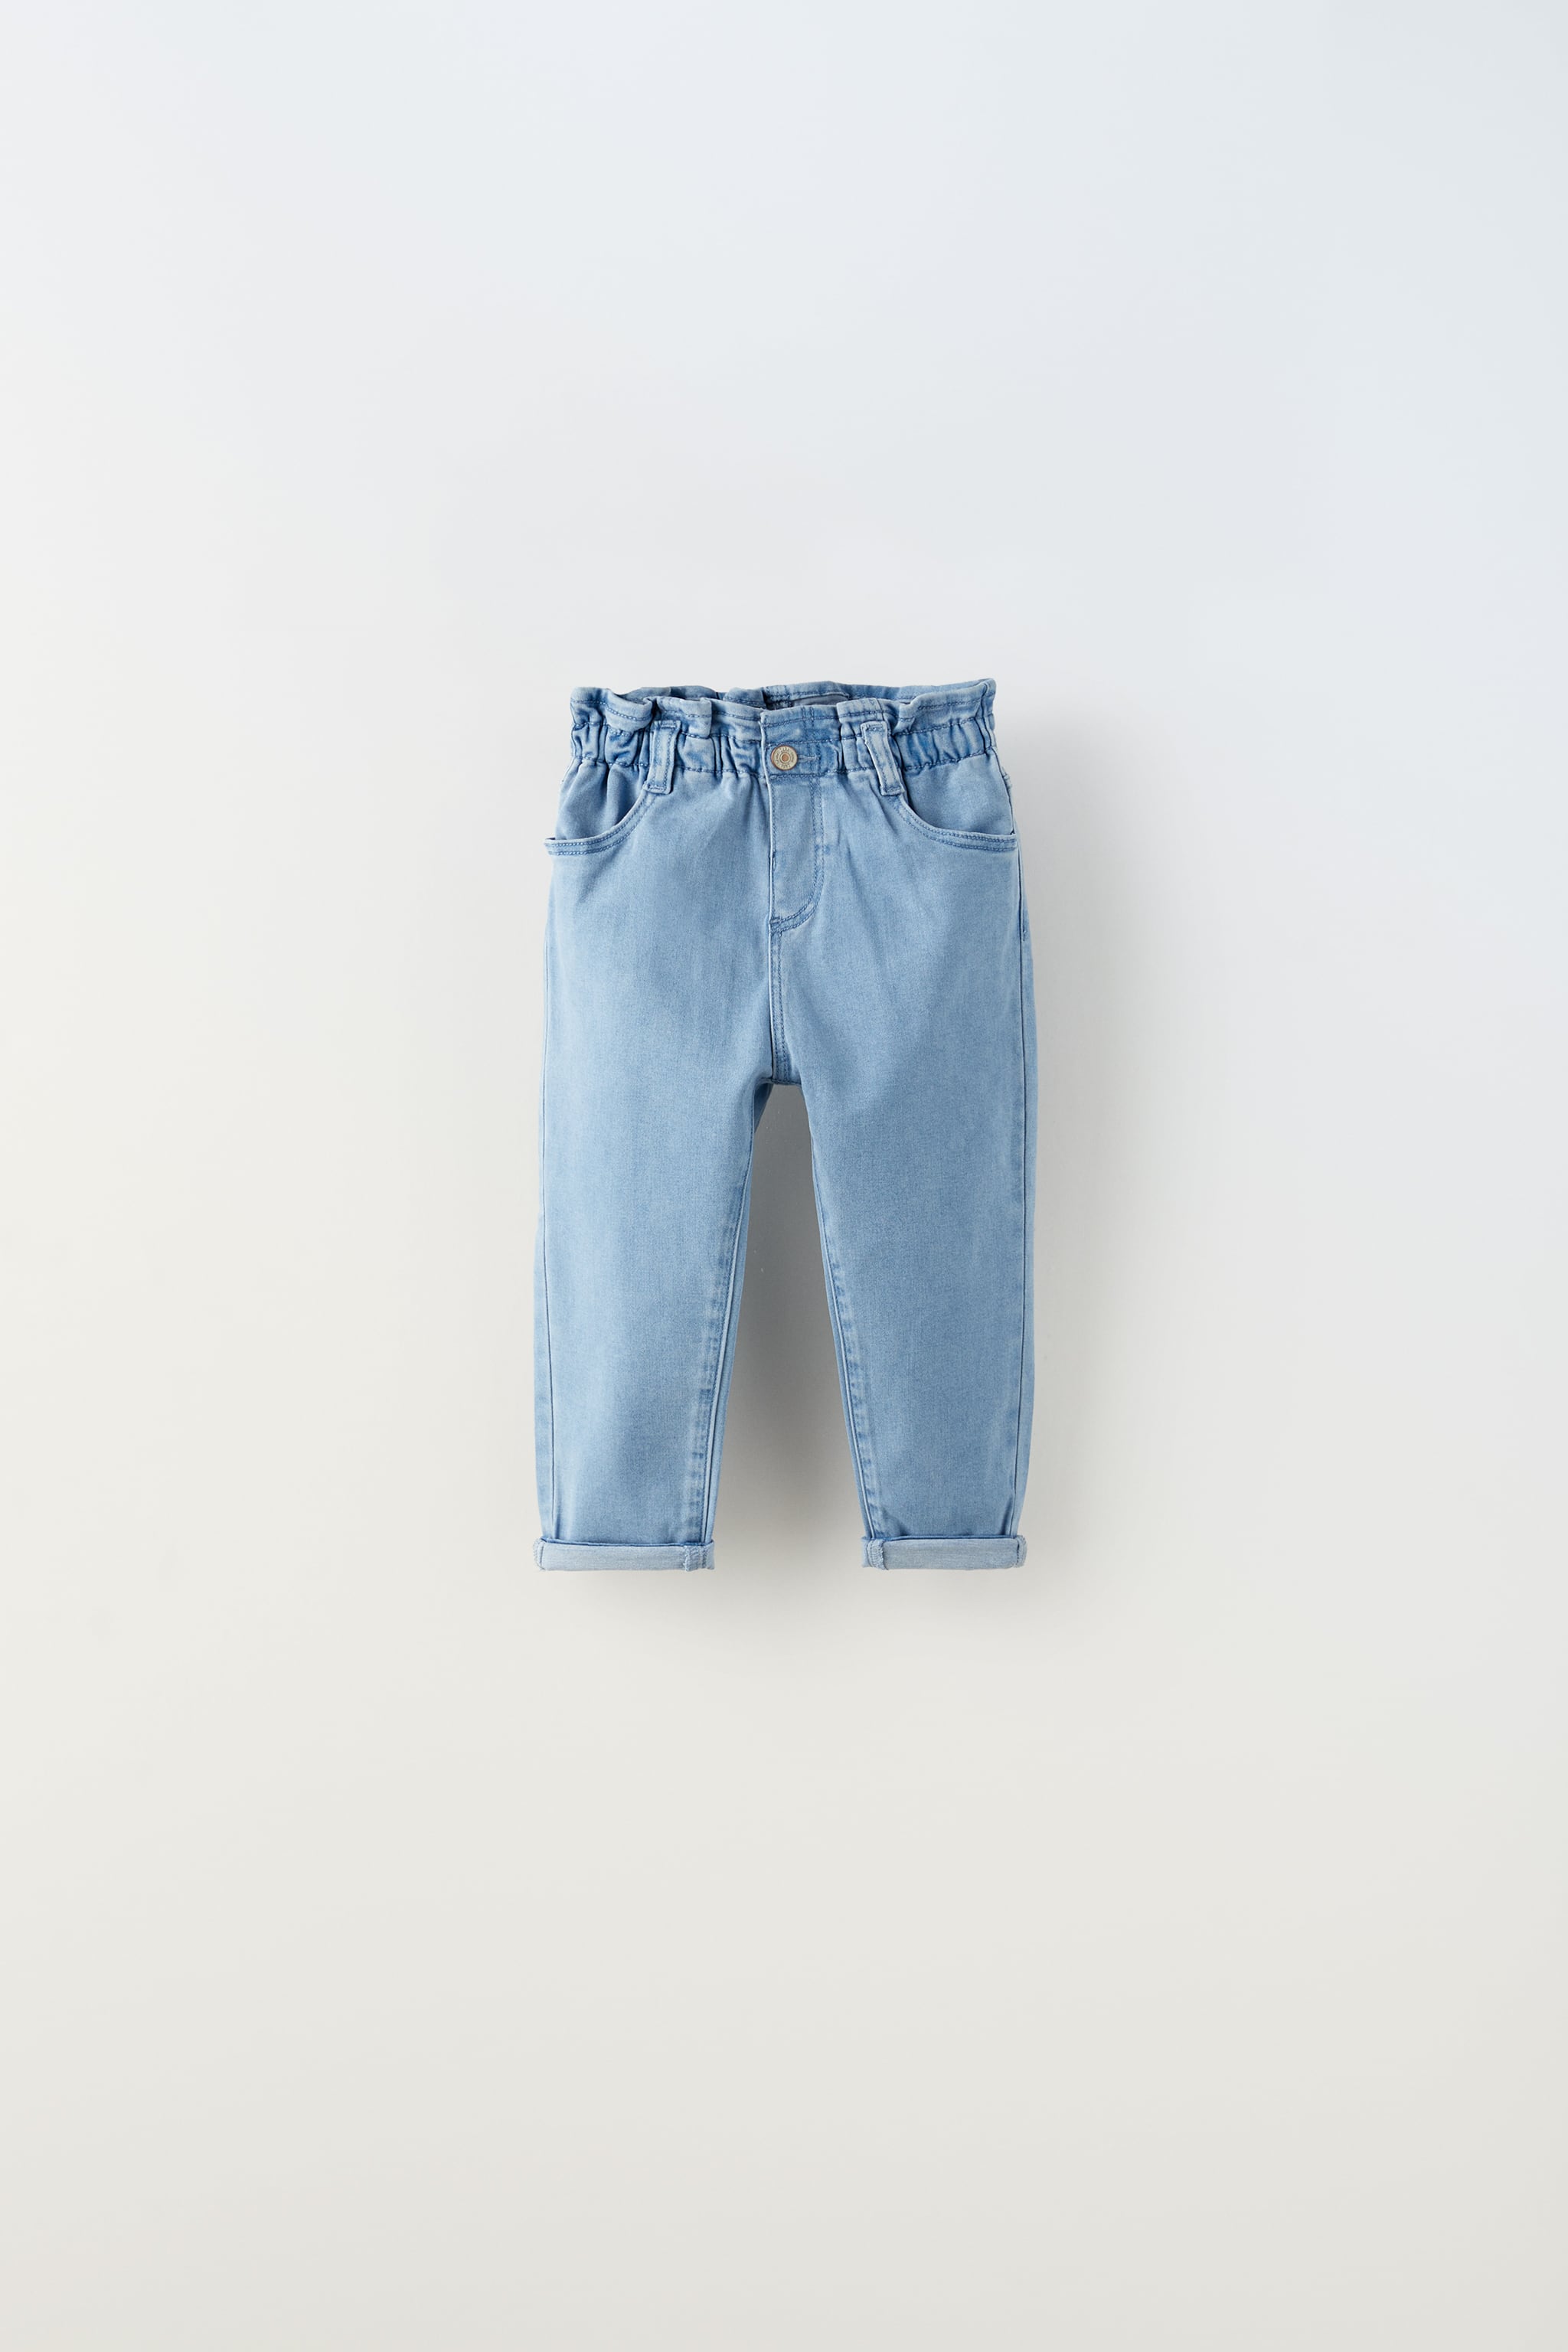 цена Комфортные джинсы с мешками Zara, синий